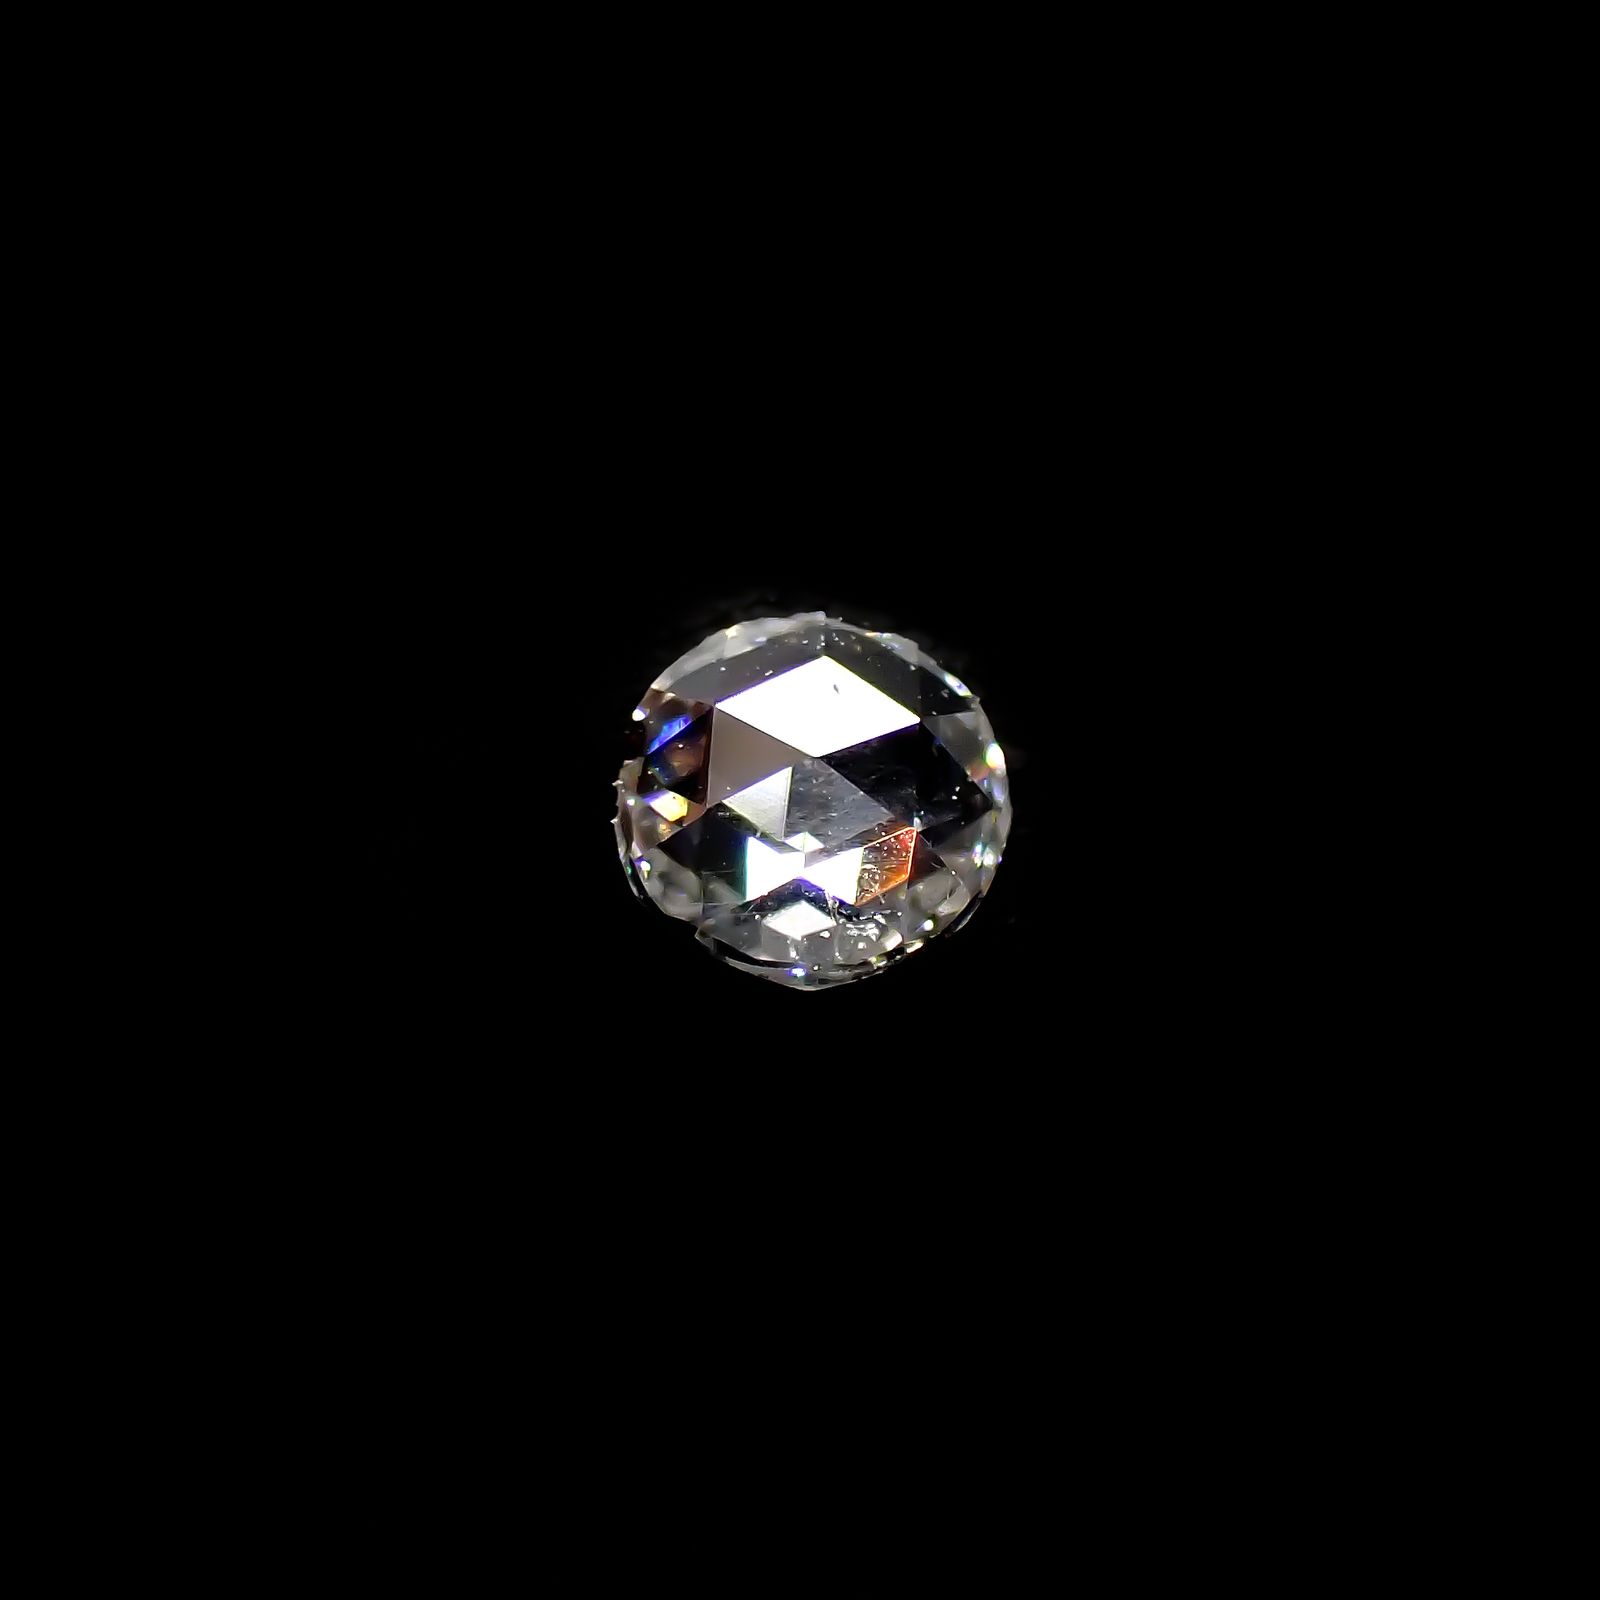 └宝石名から探す / ダイヤモンド / ◇ローズカット◇ダイヤモンド 